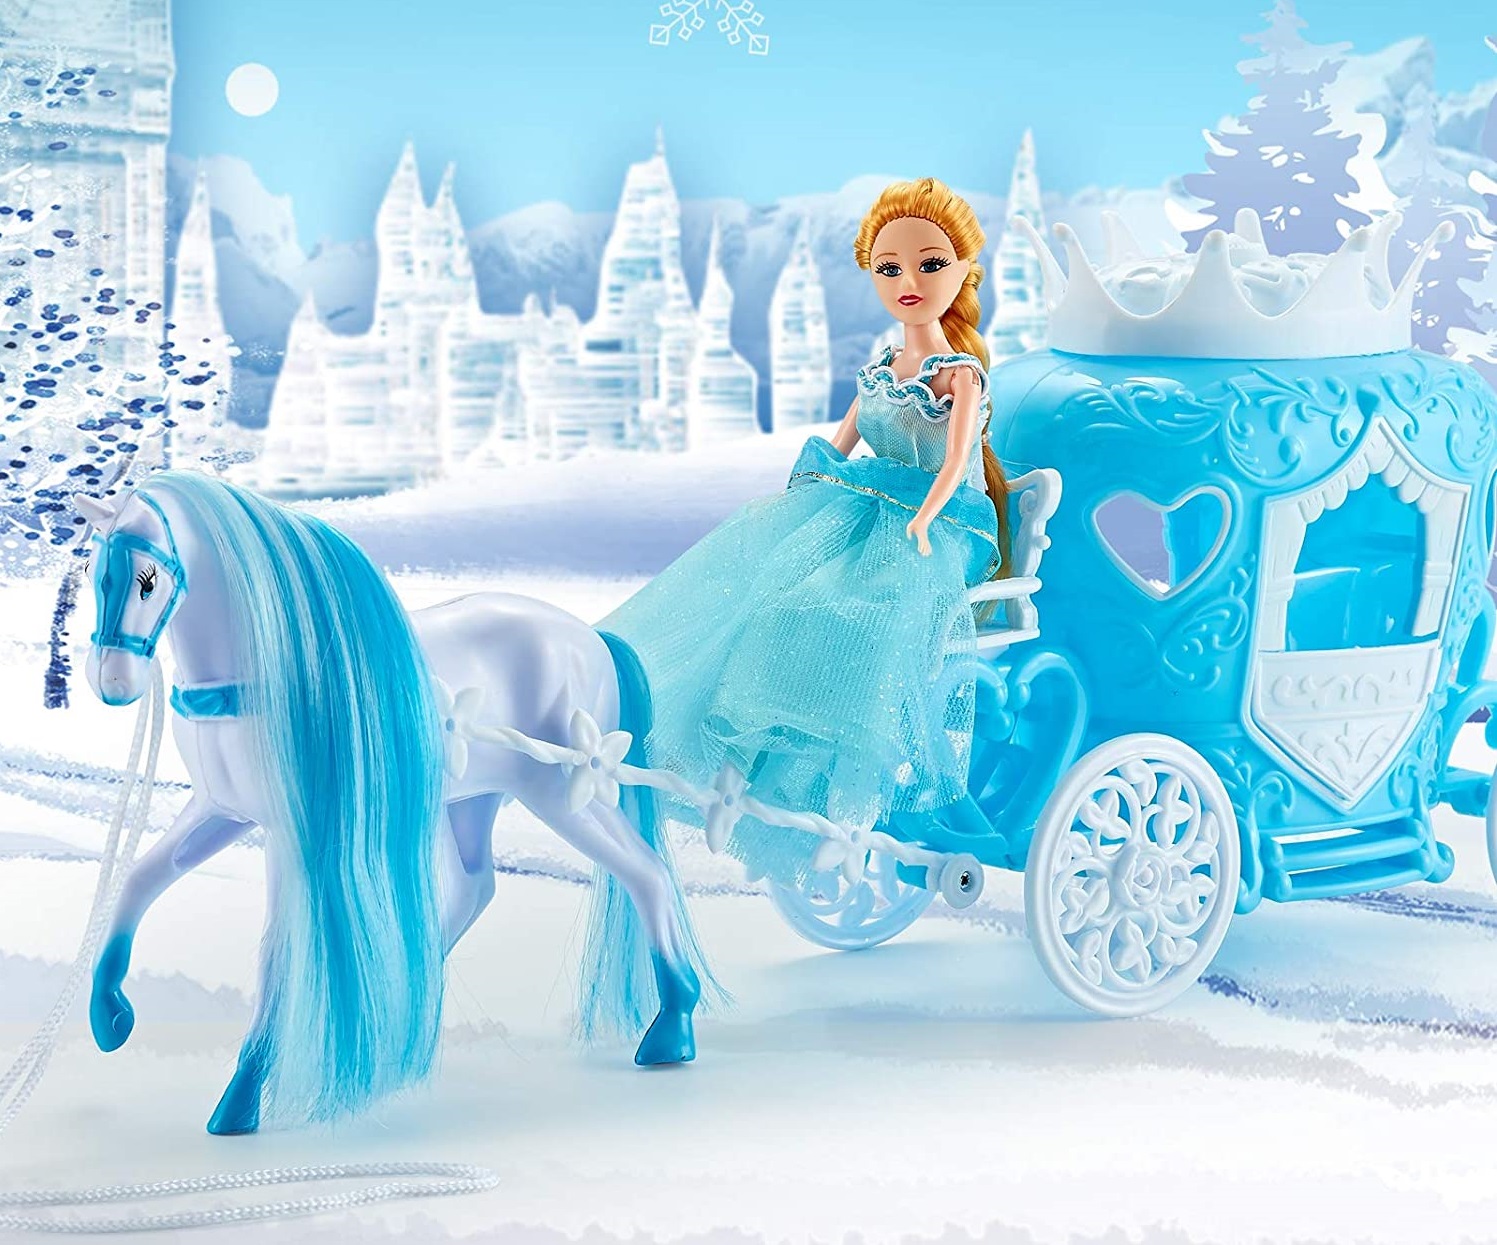 Mesebeli téli hintó fehér lóval és hercegnővel (BBMJ) (7)